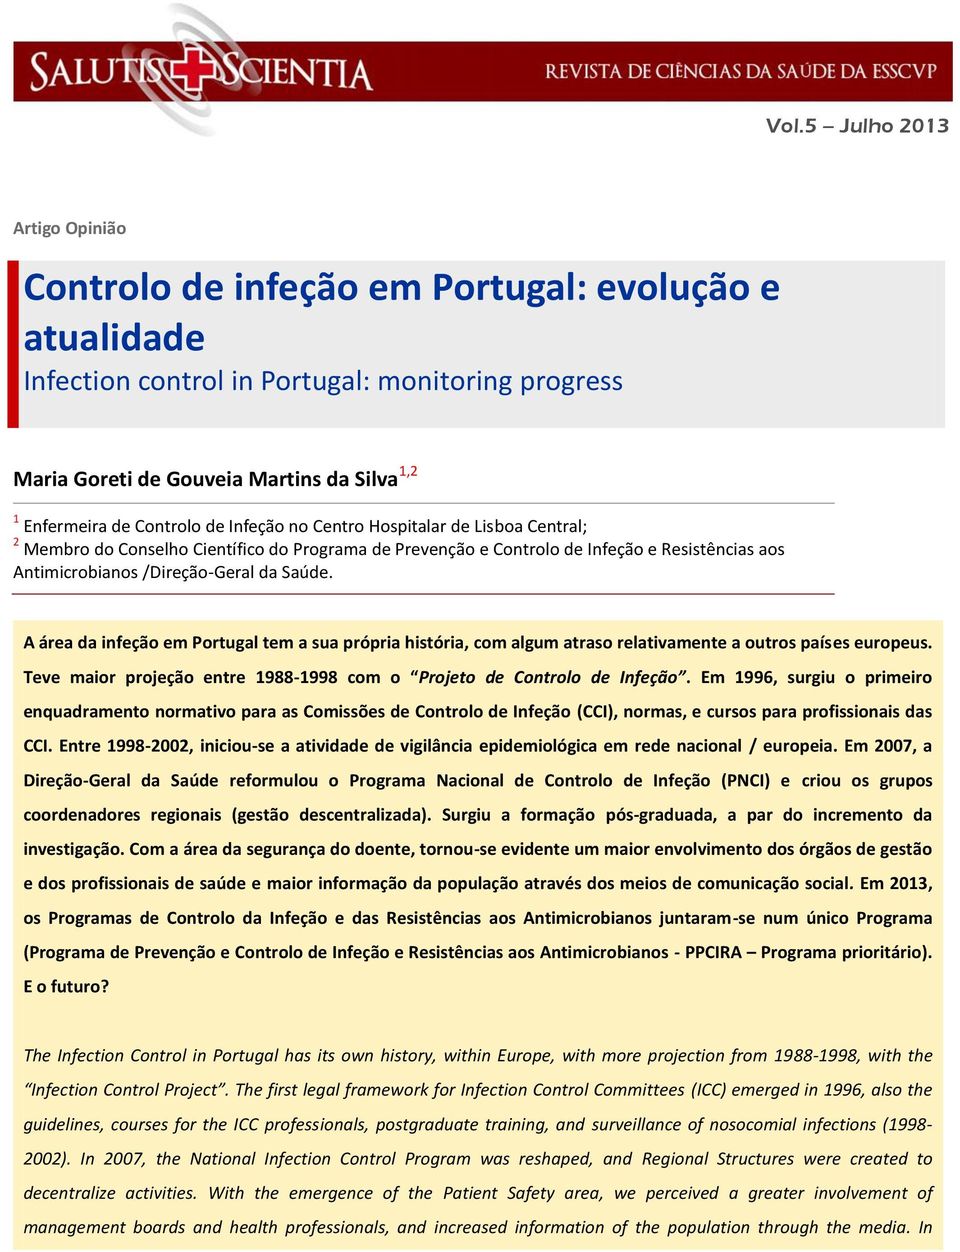 A área da infeção em Portugal tem a sua própria história, com algum atraso relativamente a outros países europeus. Teve maior projeção entre 1988-1998 com o Projeto de Controlo de Infeção.